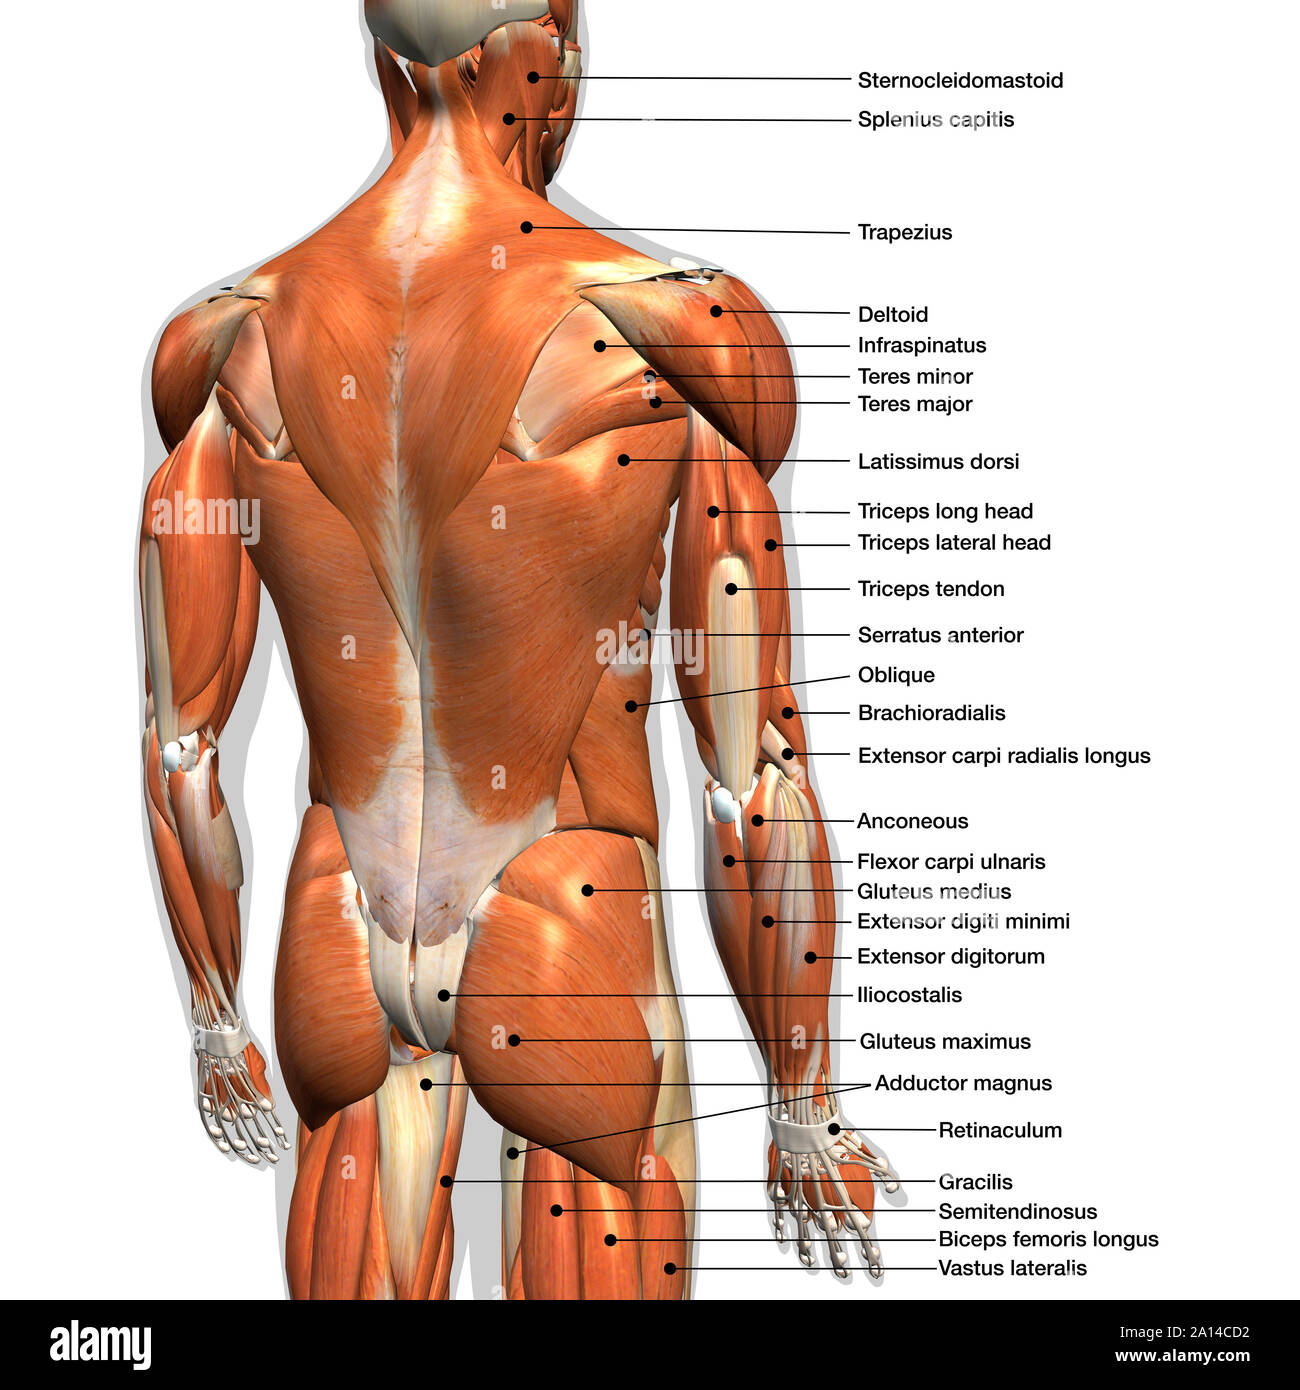 Etiquetado Anatomía Masculina Gráfico De Músculos De La Espalda Sobre Un Fondo Blanco 0059